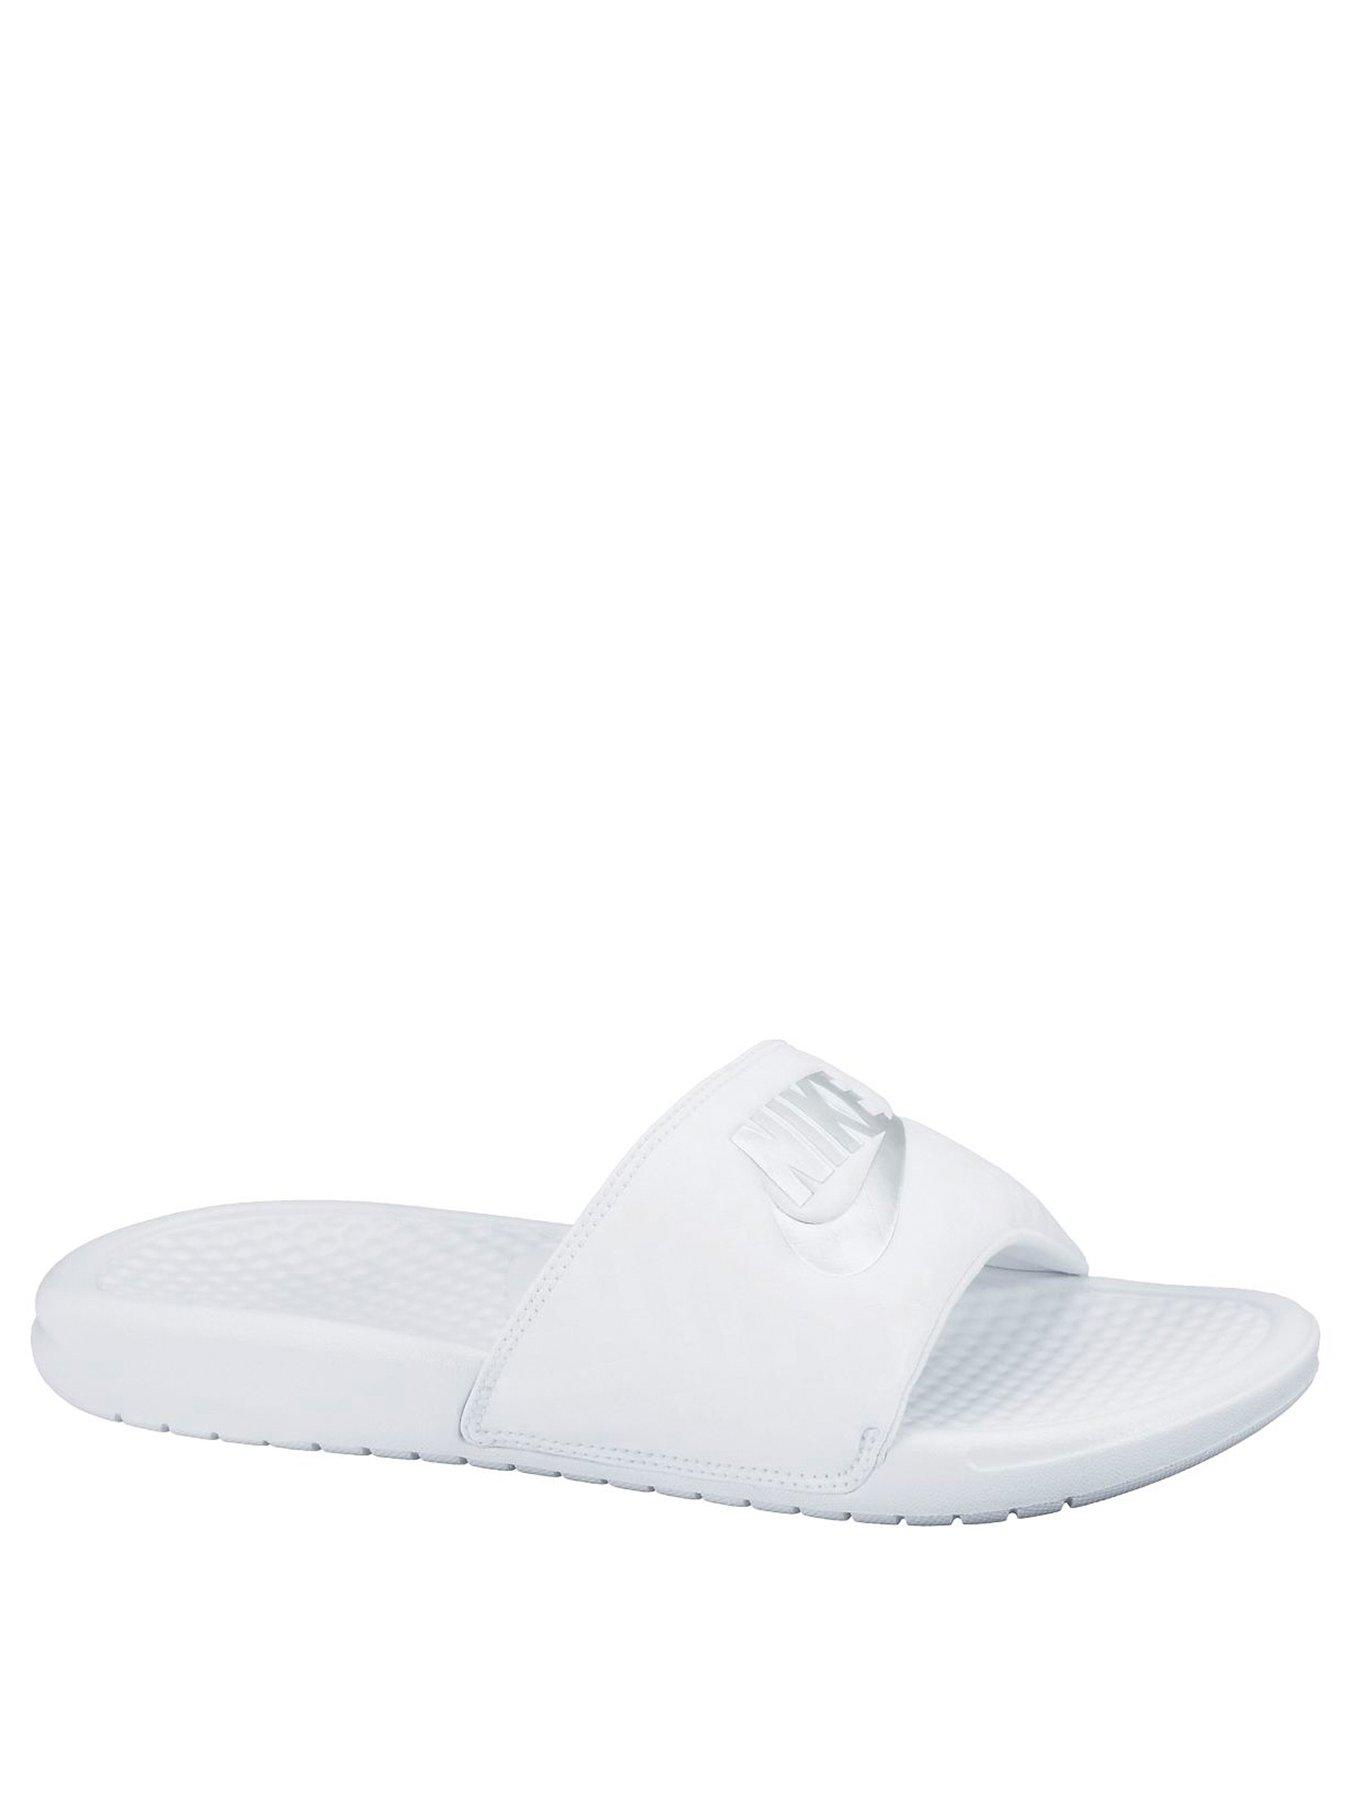 all white nike flip flops